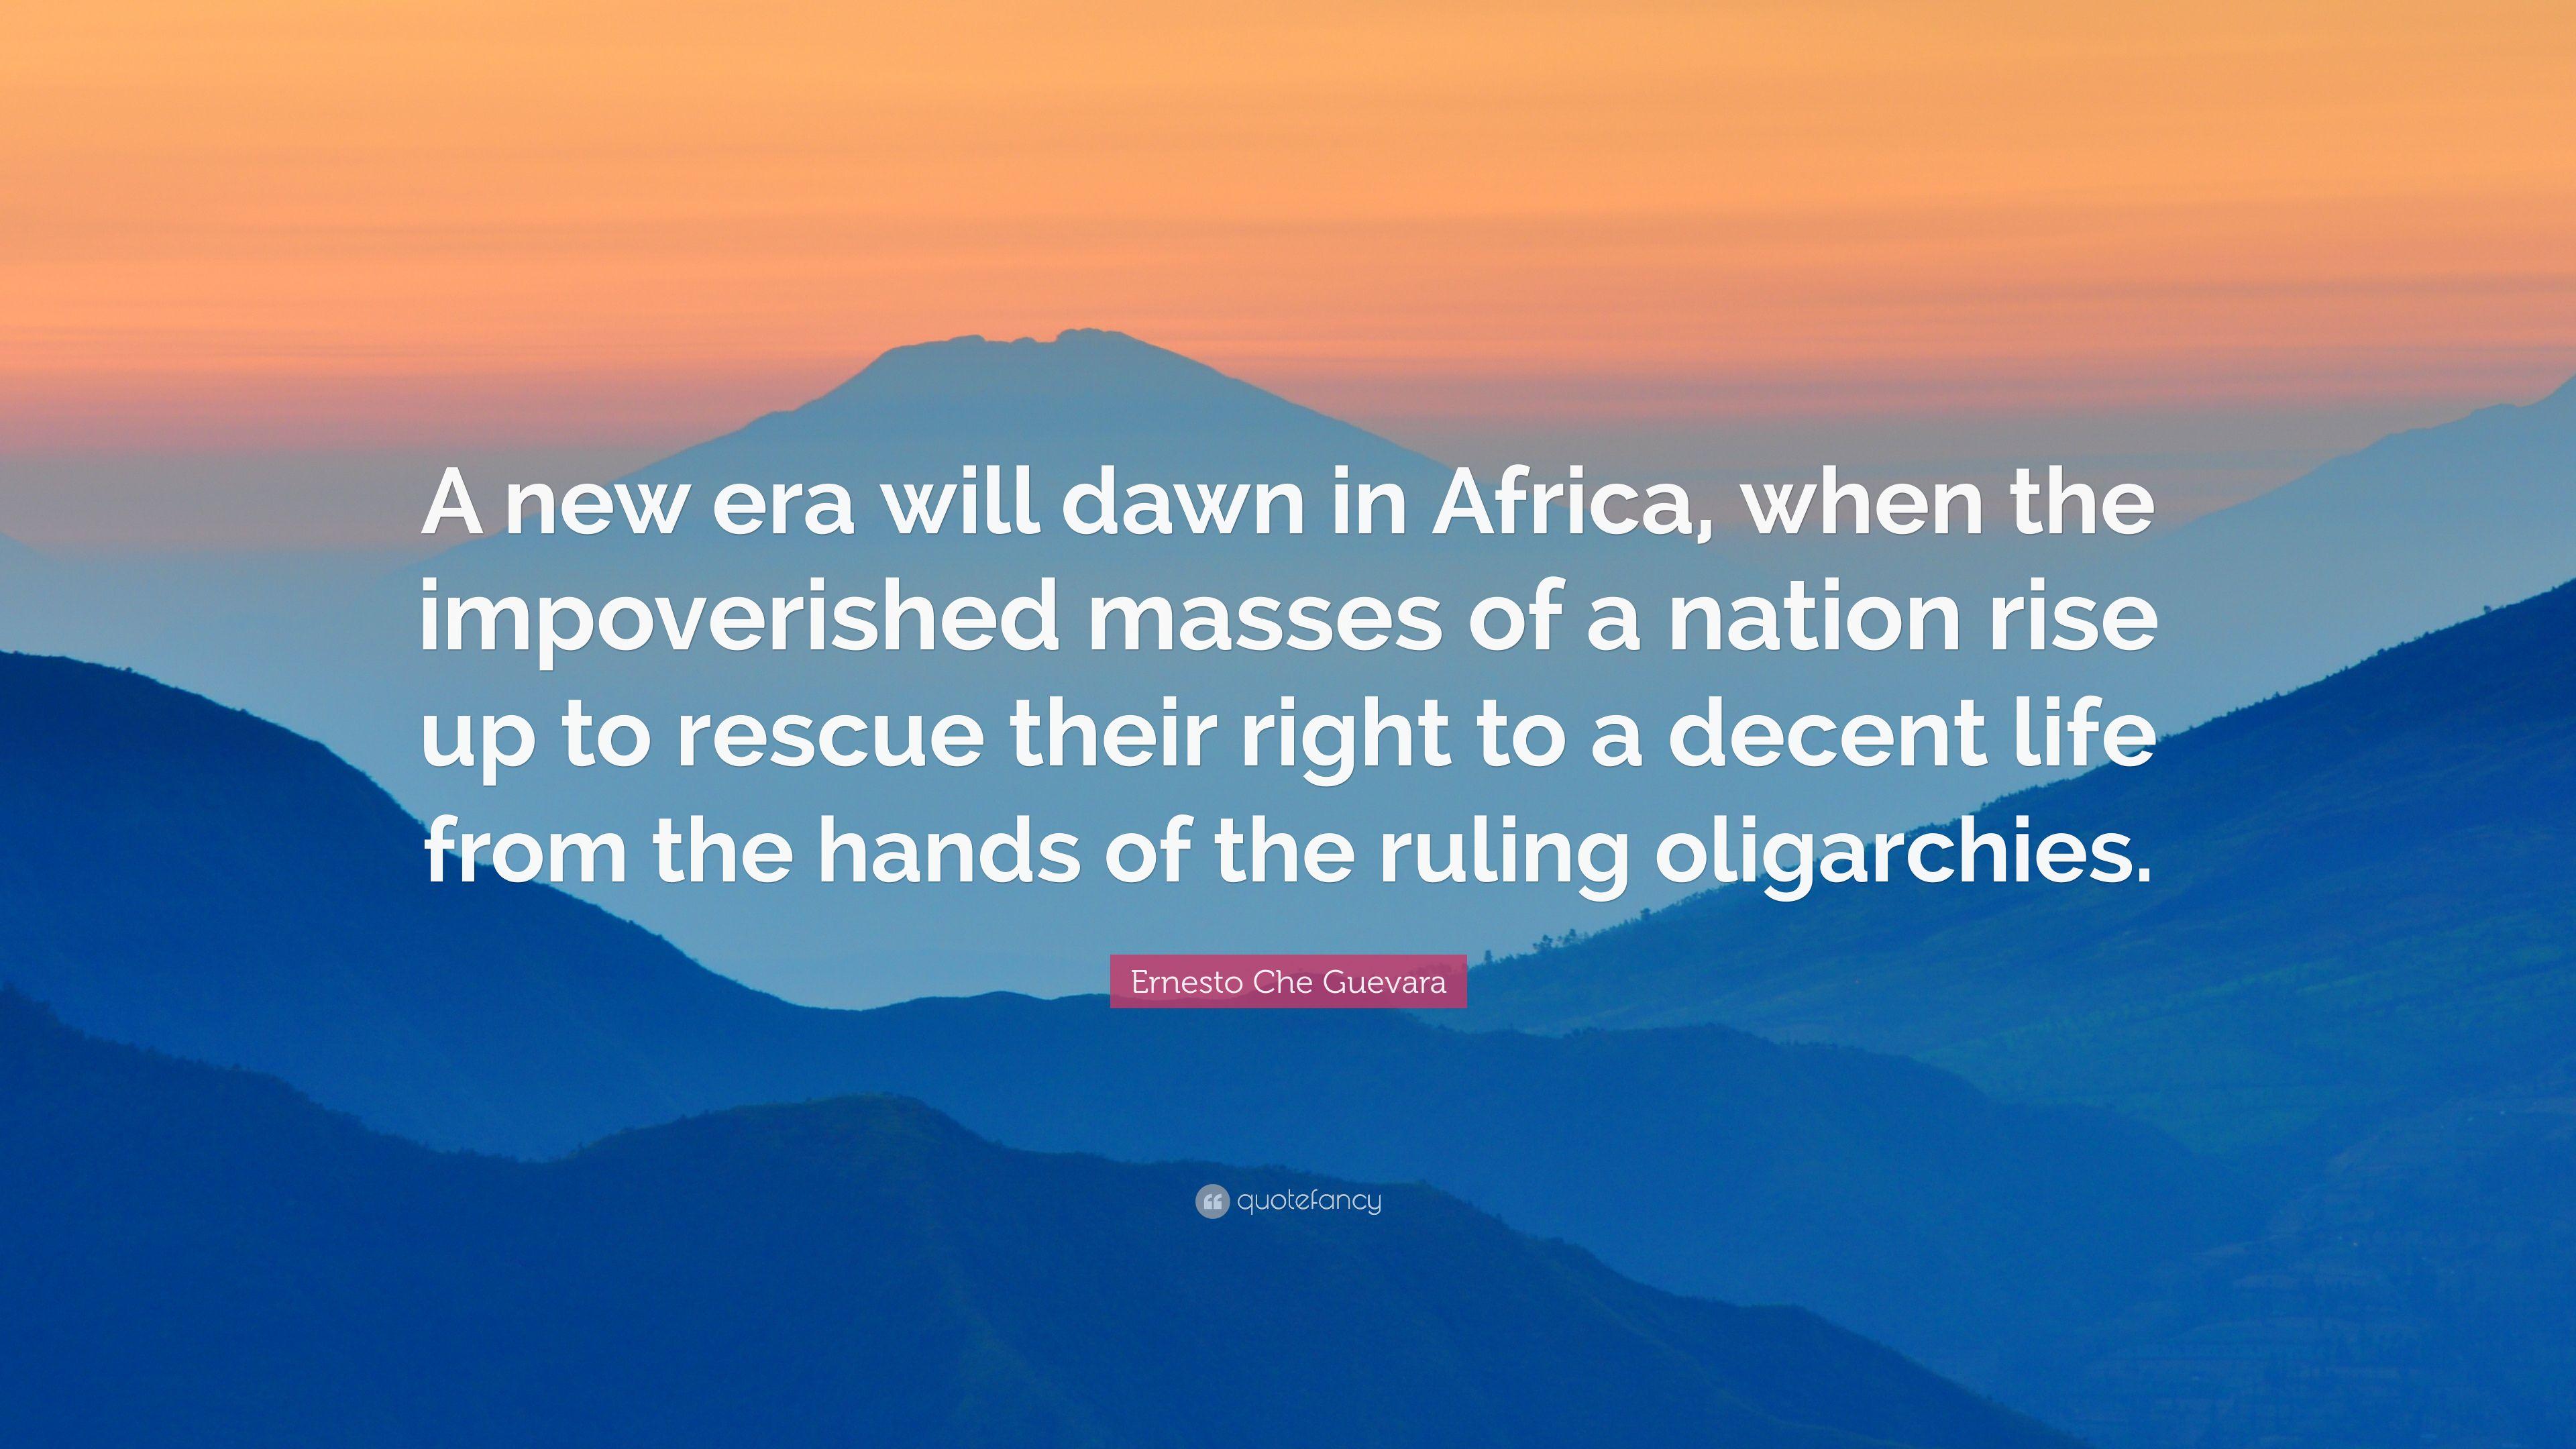 Ernesto Che Guevara Quote: “A new era will dawn in Africa, when